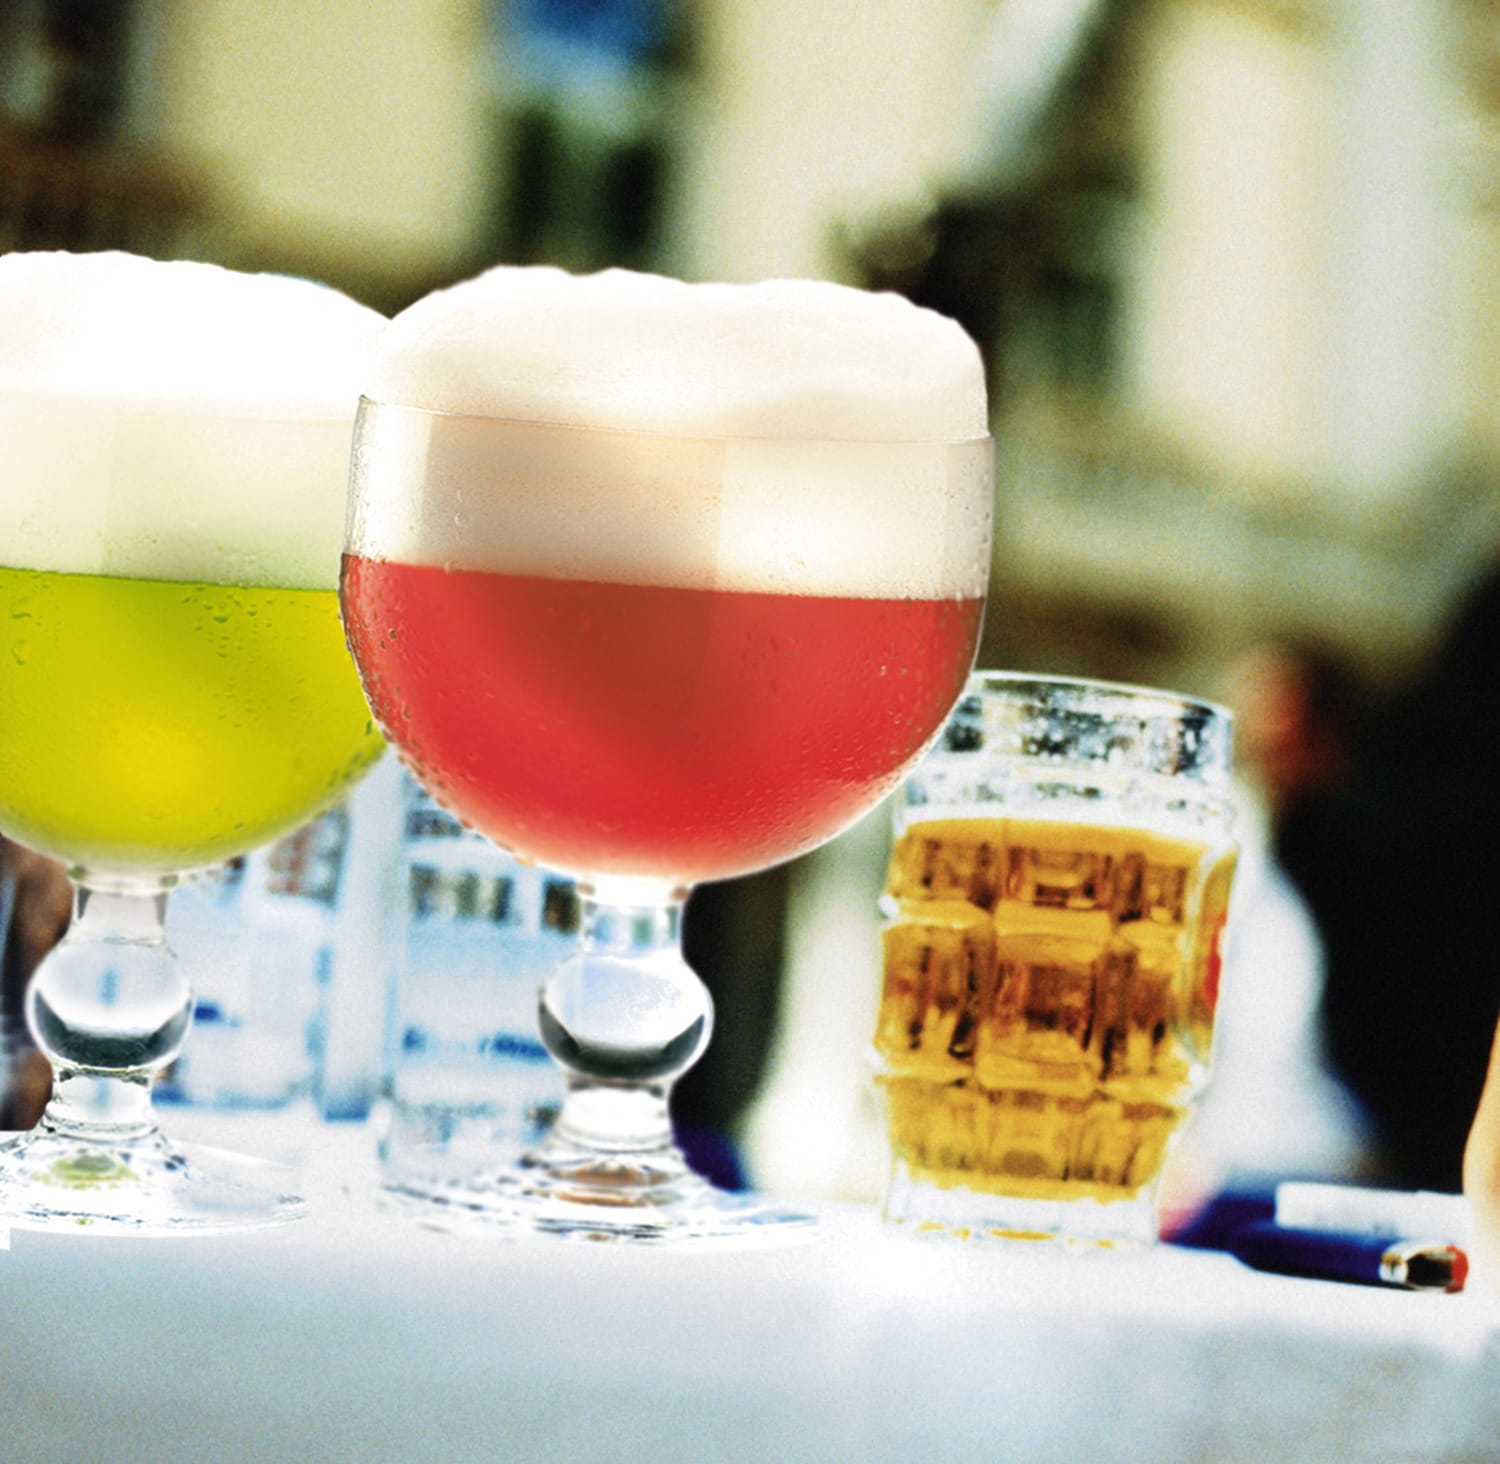 Die Franzosen bezeichneten im 19. Jahrhundert das Berliner Sauerbier als "Champagner du Nord" (Champagner des Nordens).